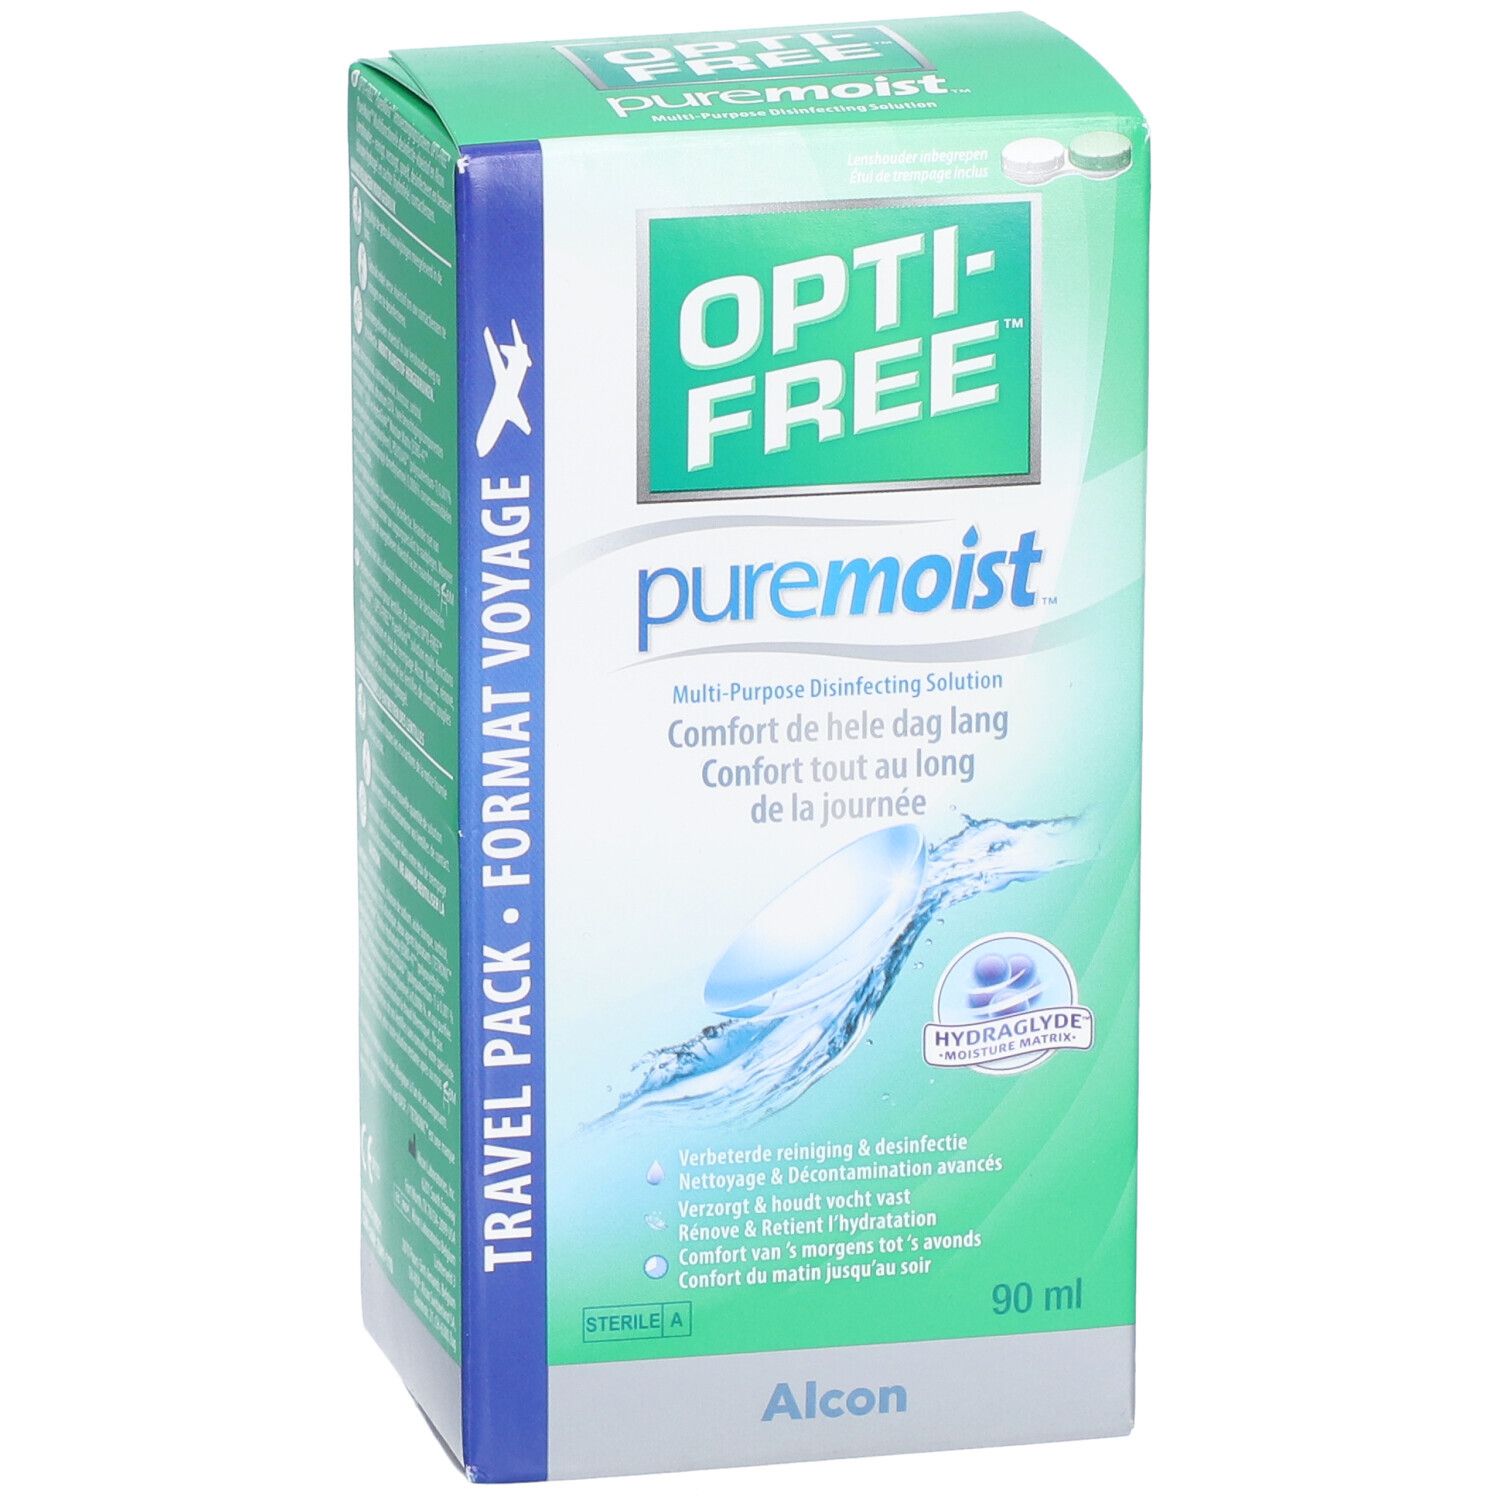 Opti-Free® PureMoist® Solution désinfectante multifonction